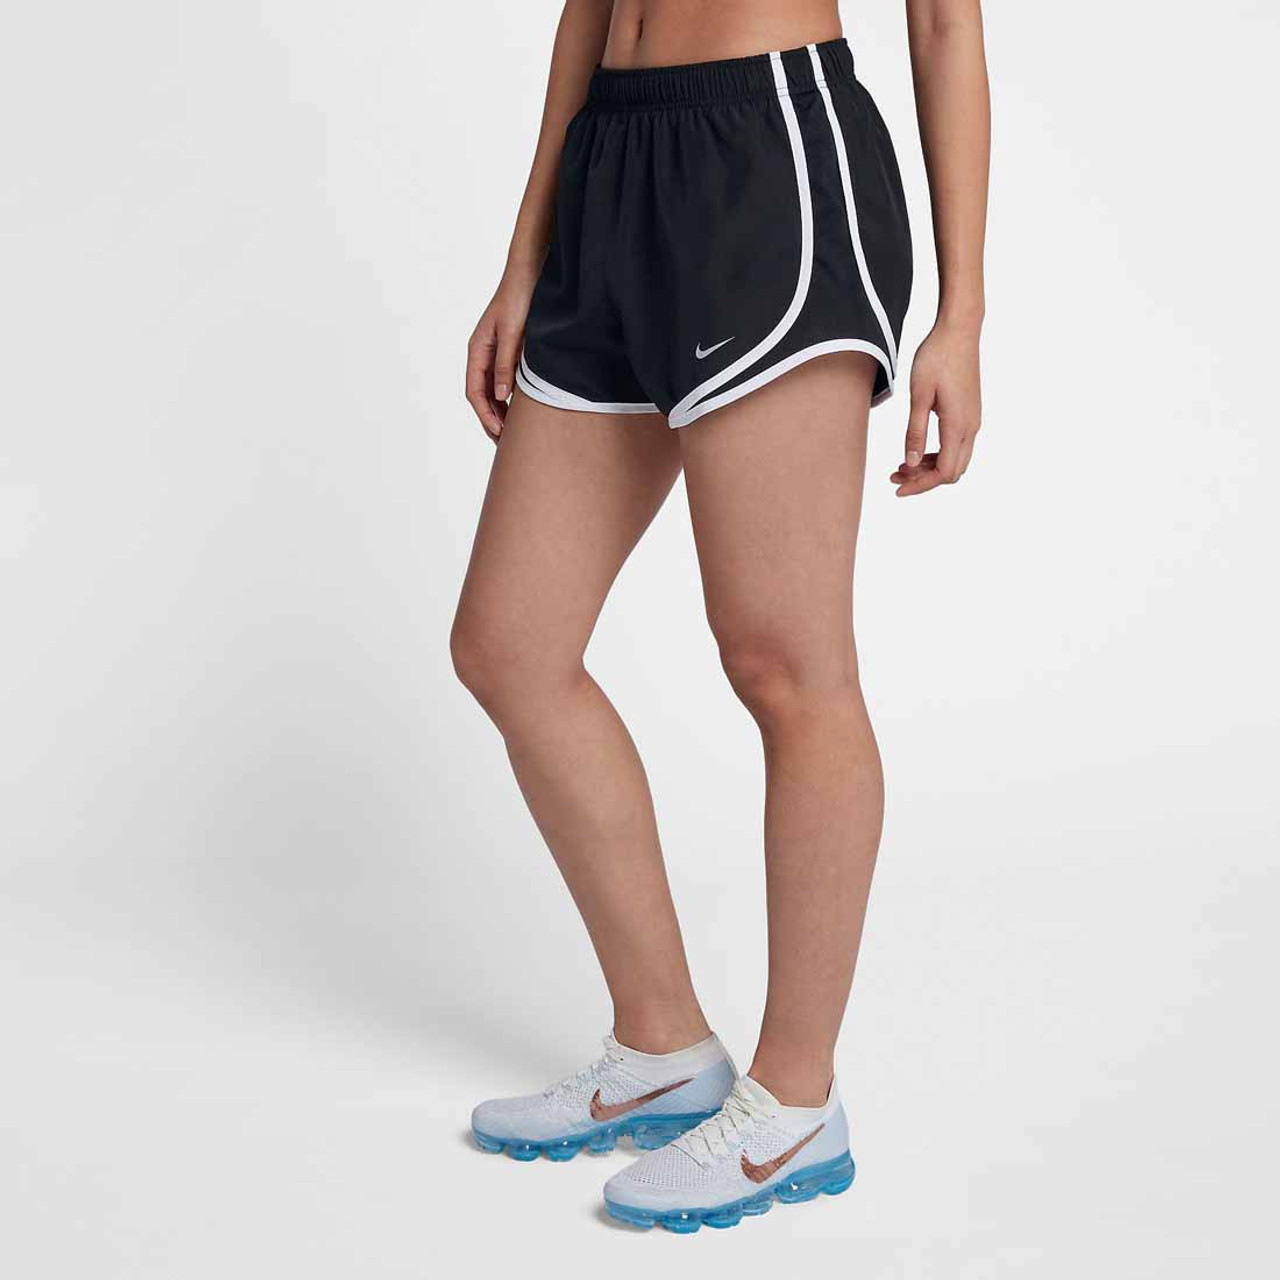 amor Deformación acuerdo Nike Women's Black/White Nike Tempo Running Shorts $ 30 | TYLER'S